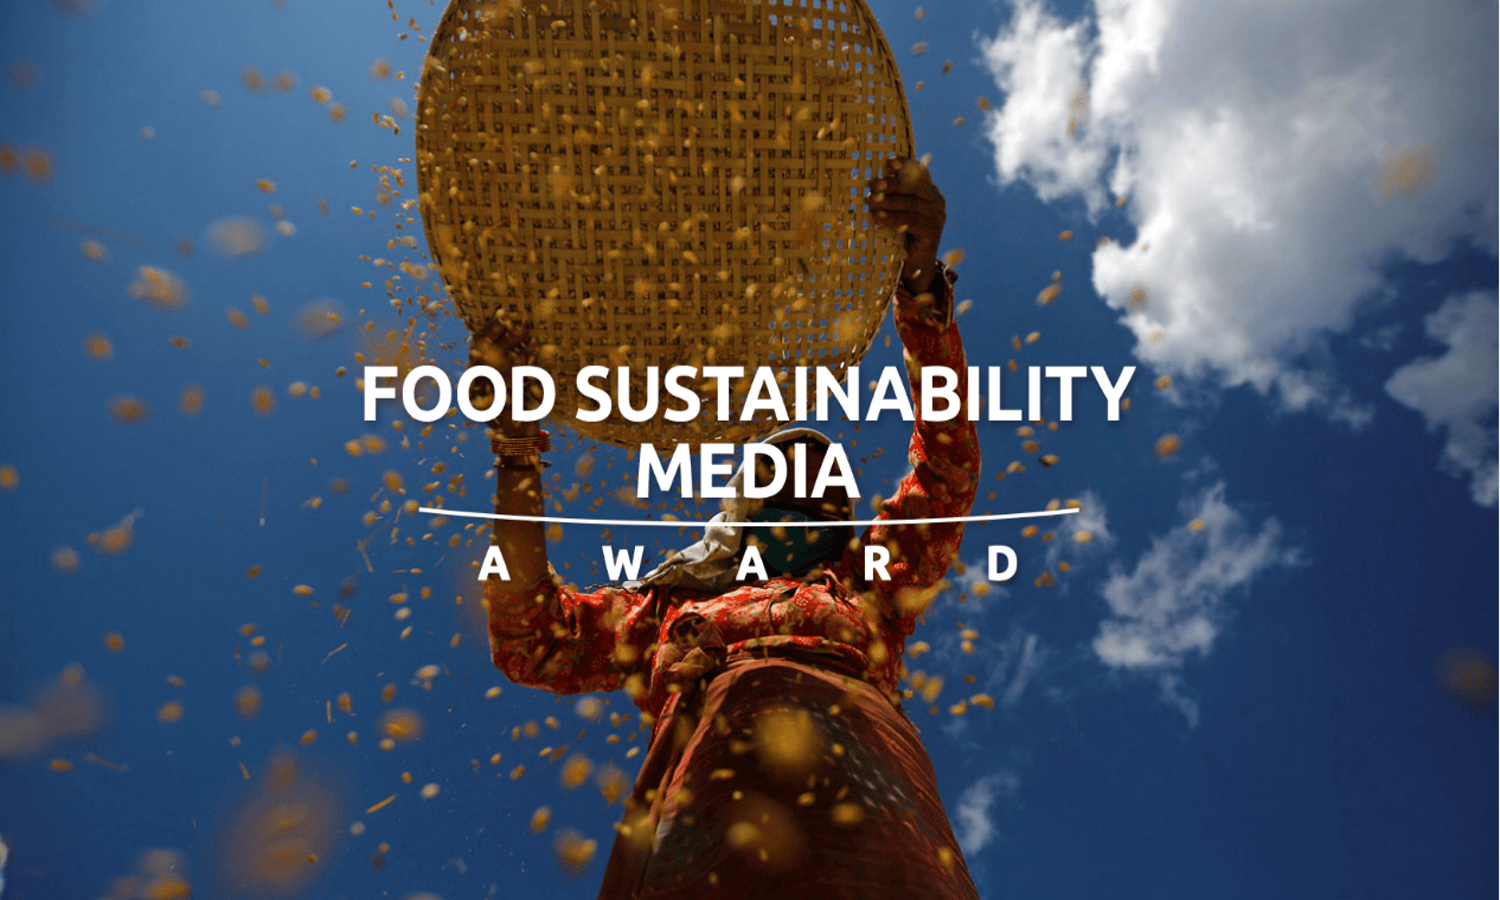 苏打灰食品和营养中心和汤森路透基金会已经宣布2017年食品可持续性媒体奖。